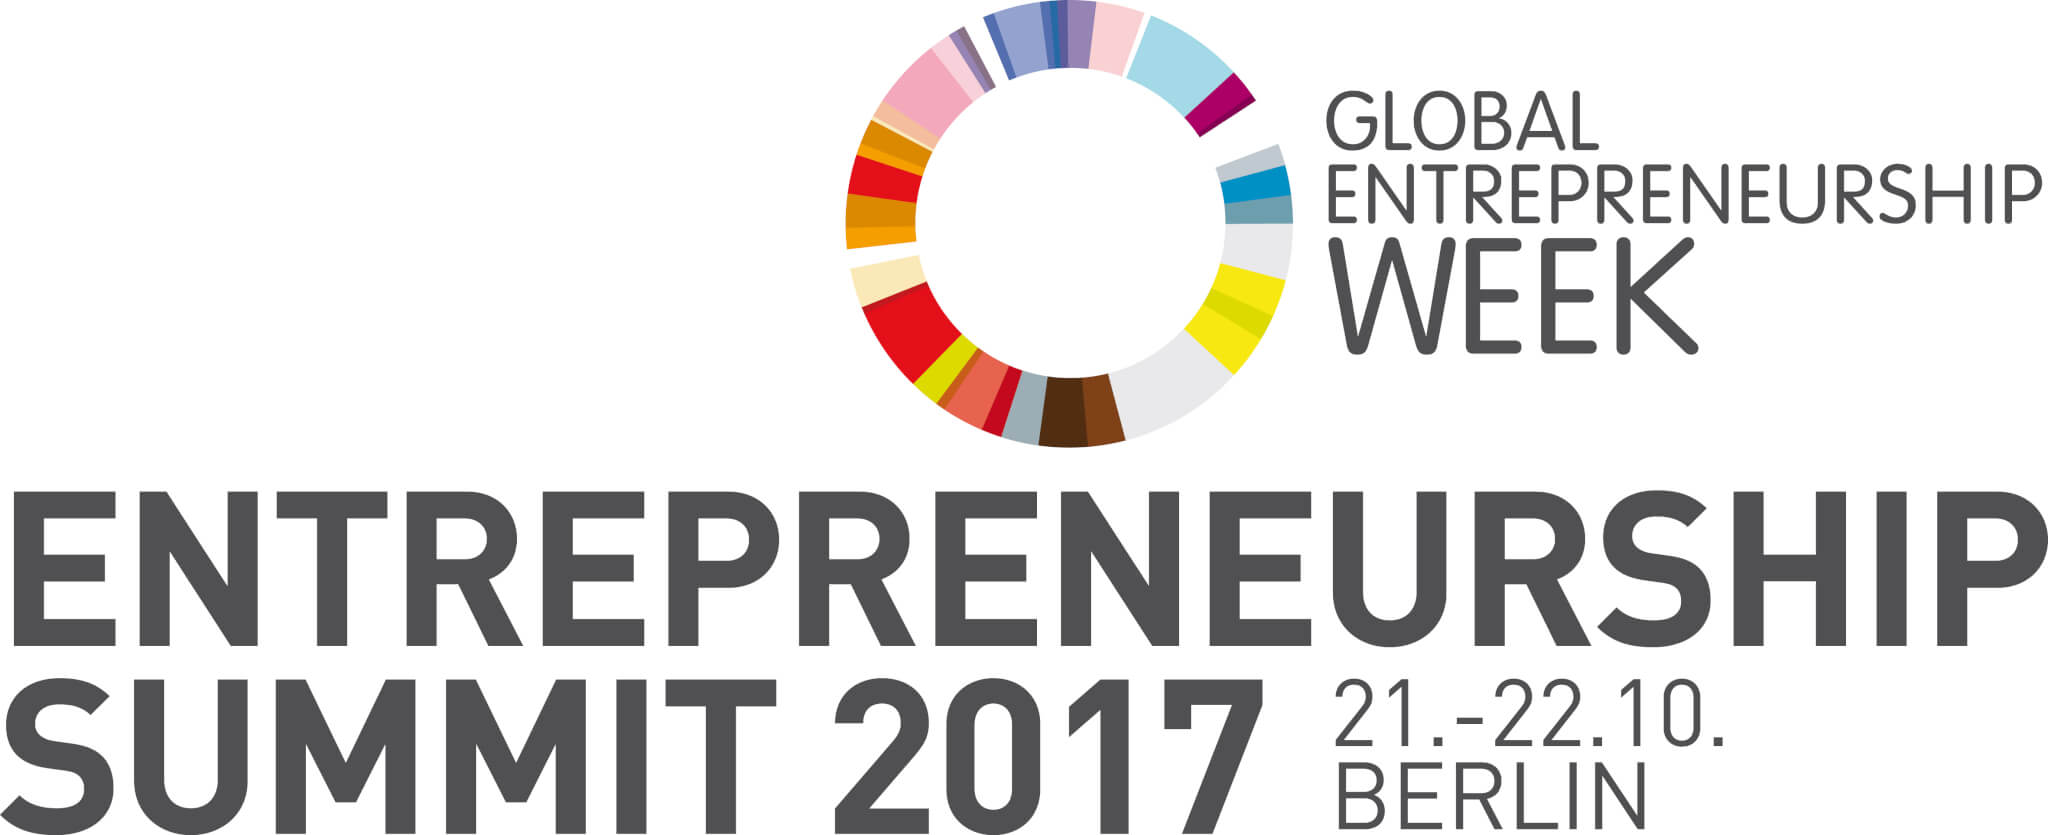 Entrepeneurship Summit Logo